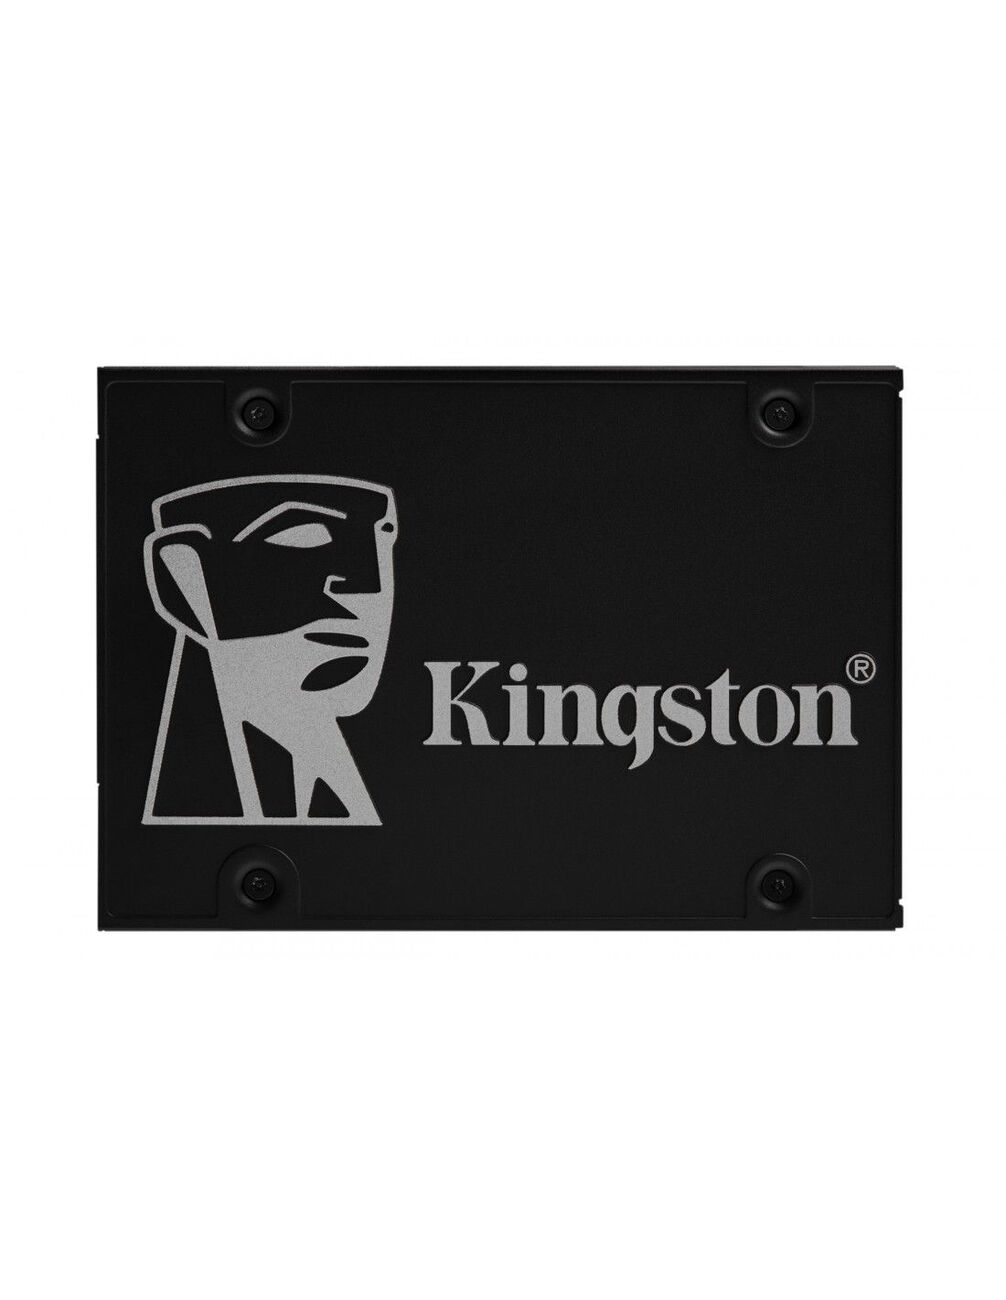 KINGSTON SSD INTERNO KC600 CRITTOGRAFATO 1TB 2.5 SATA 6GB/S